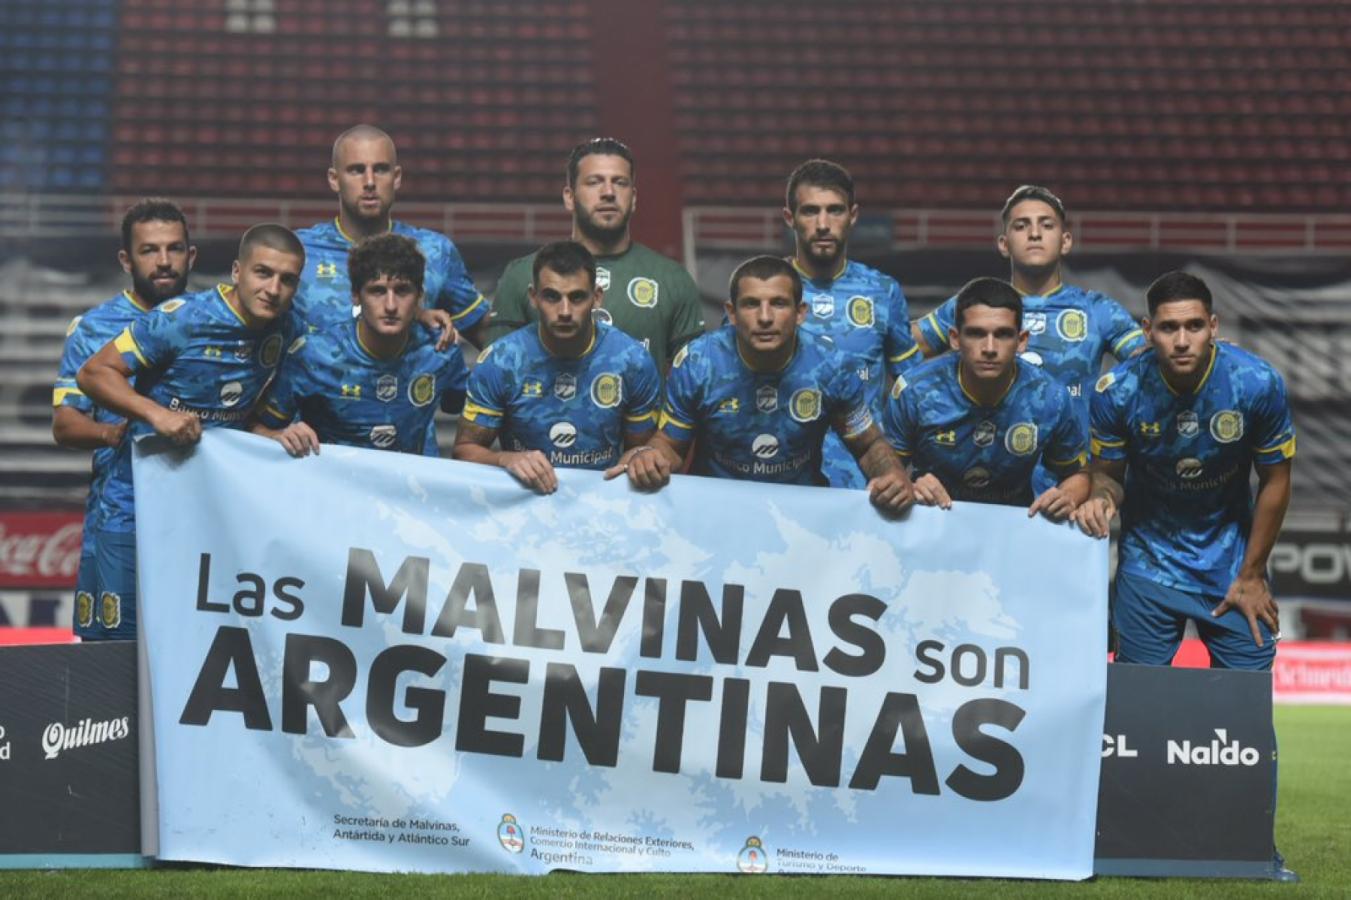 Imagen Rosario Central y el mensaje "Las Malvinas son argentinas" en el Día del Veterano y de los Caídos en la guerra de Malvinas. Foto: @CARCoficial